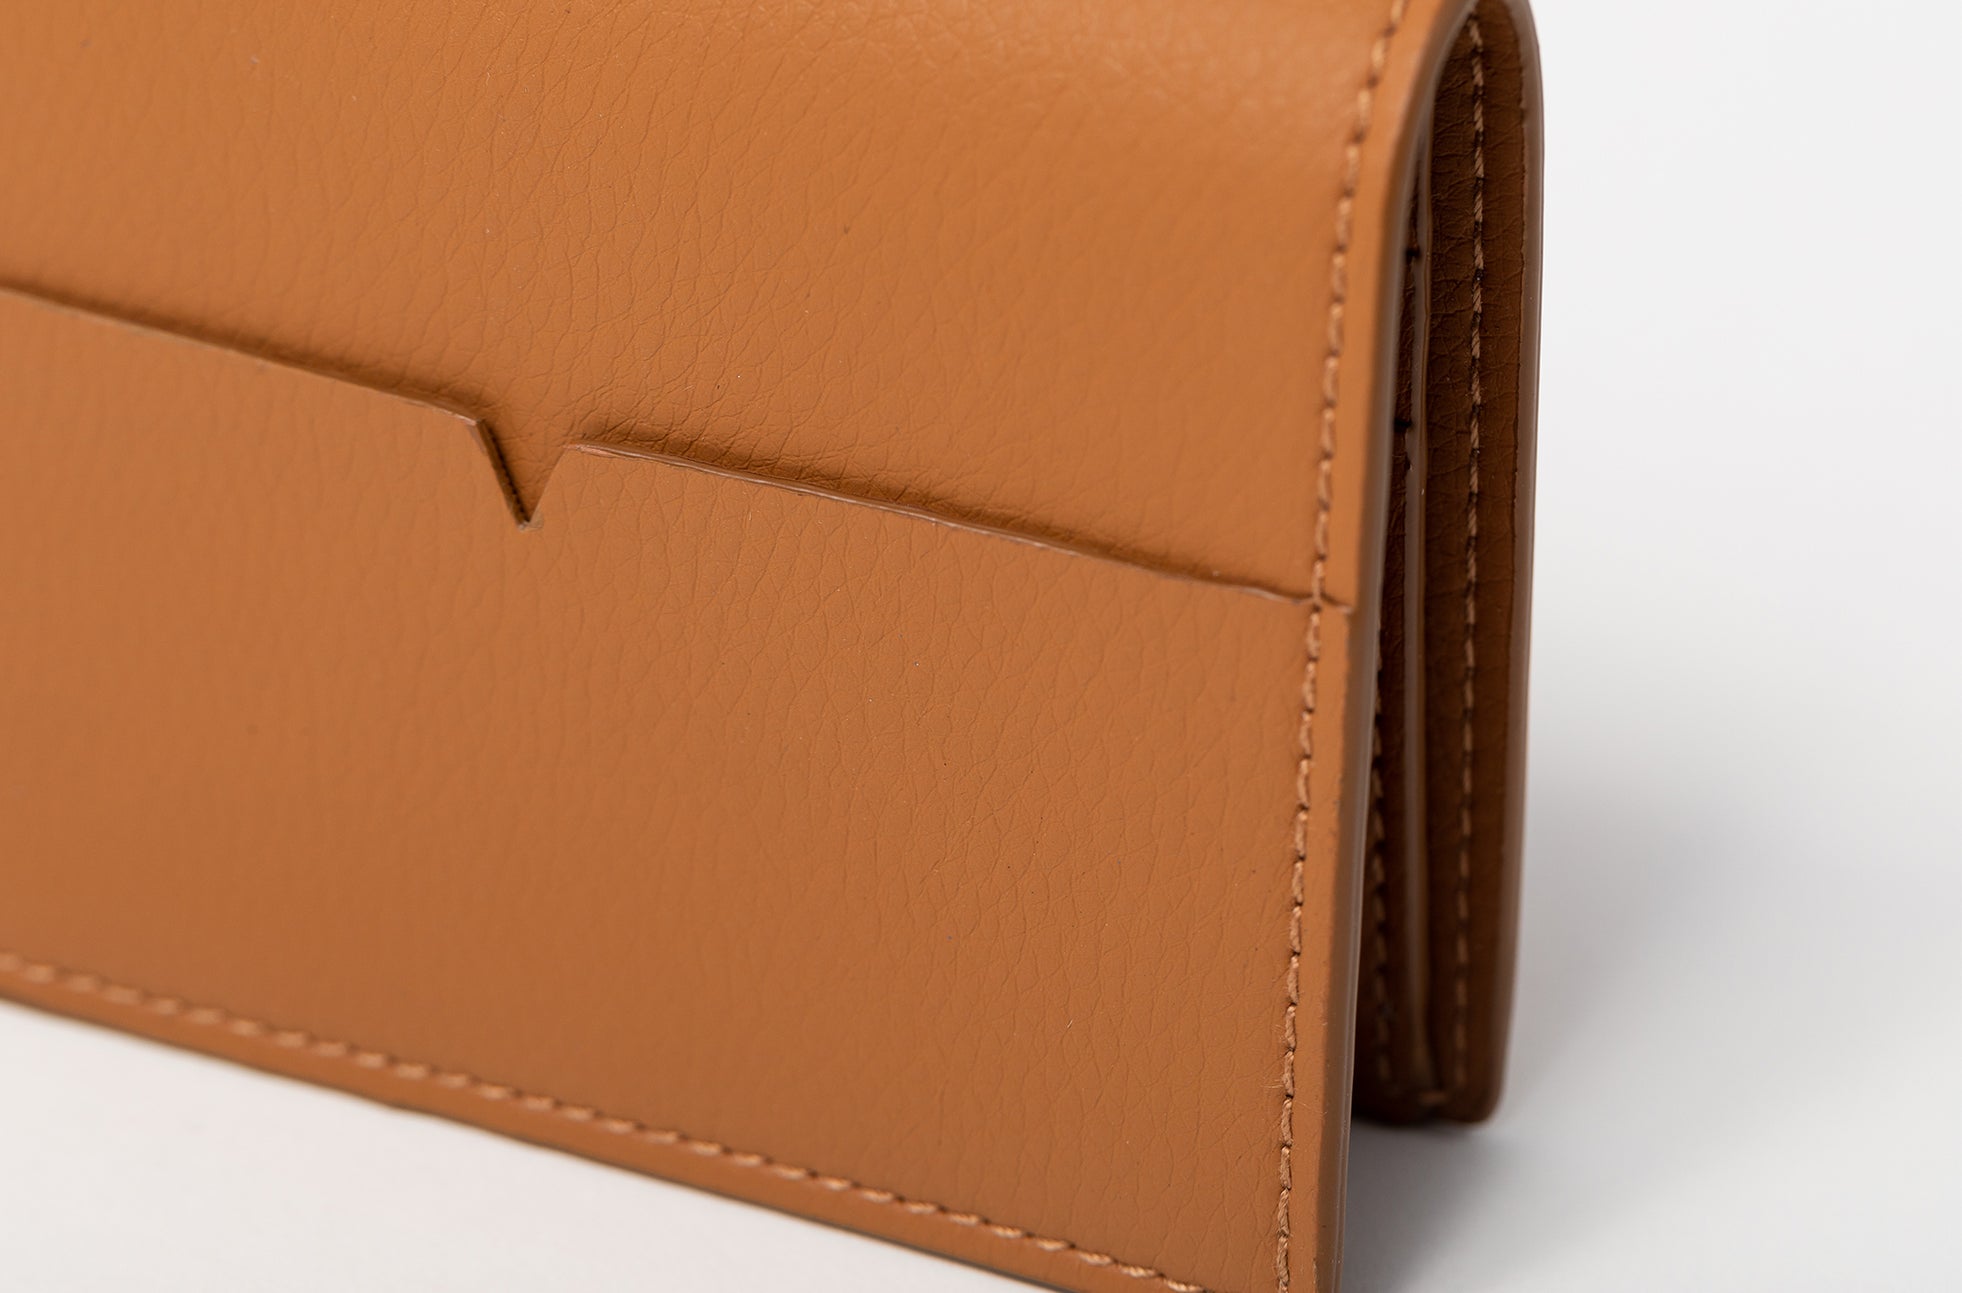 The Fold Wallet in Technik-Leather in Caramel image 7